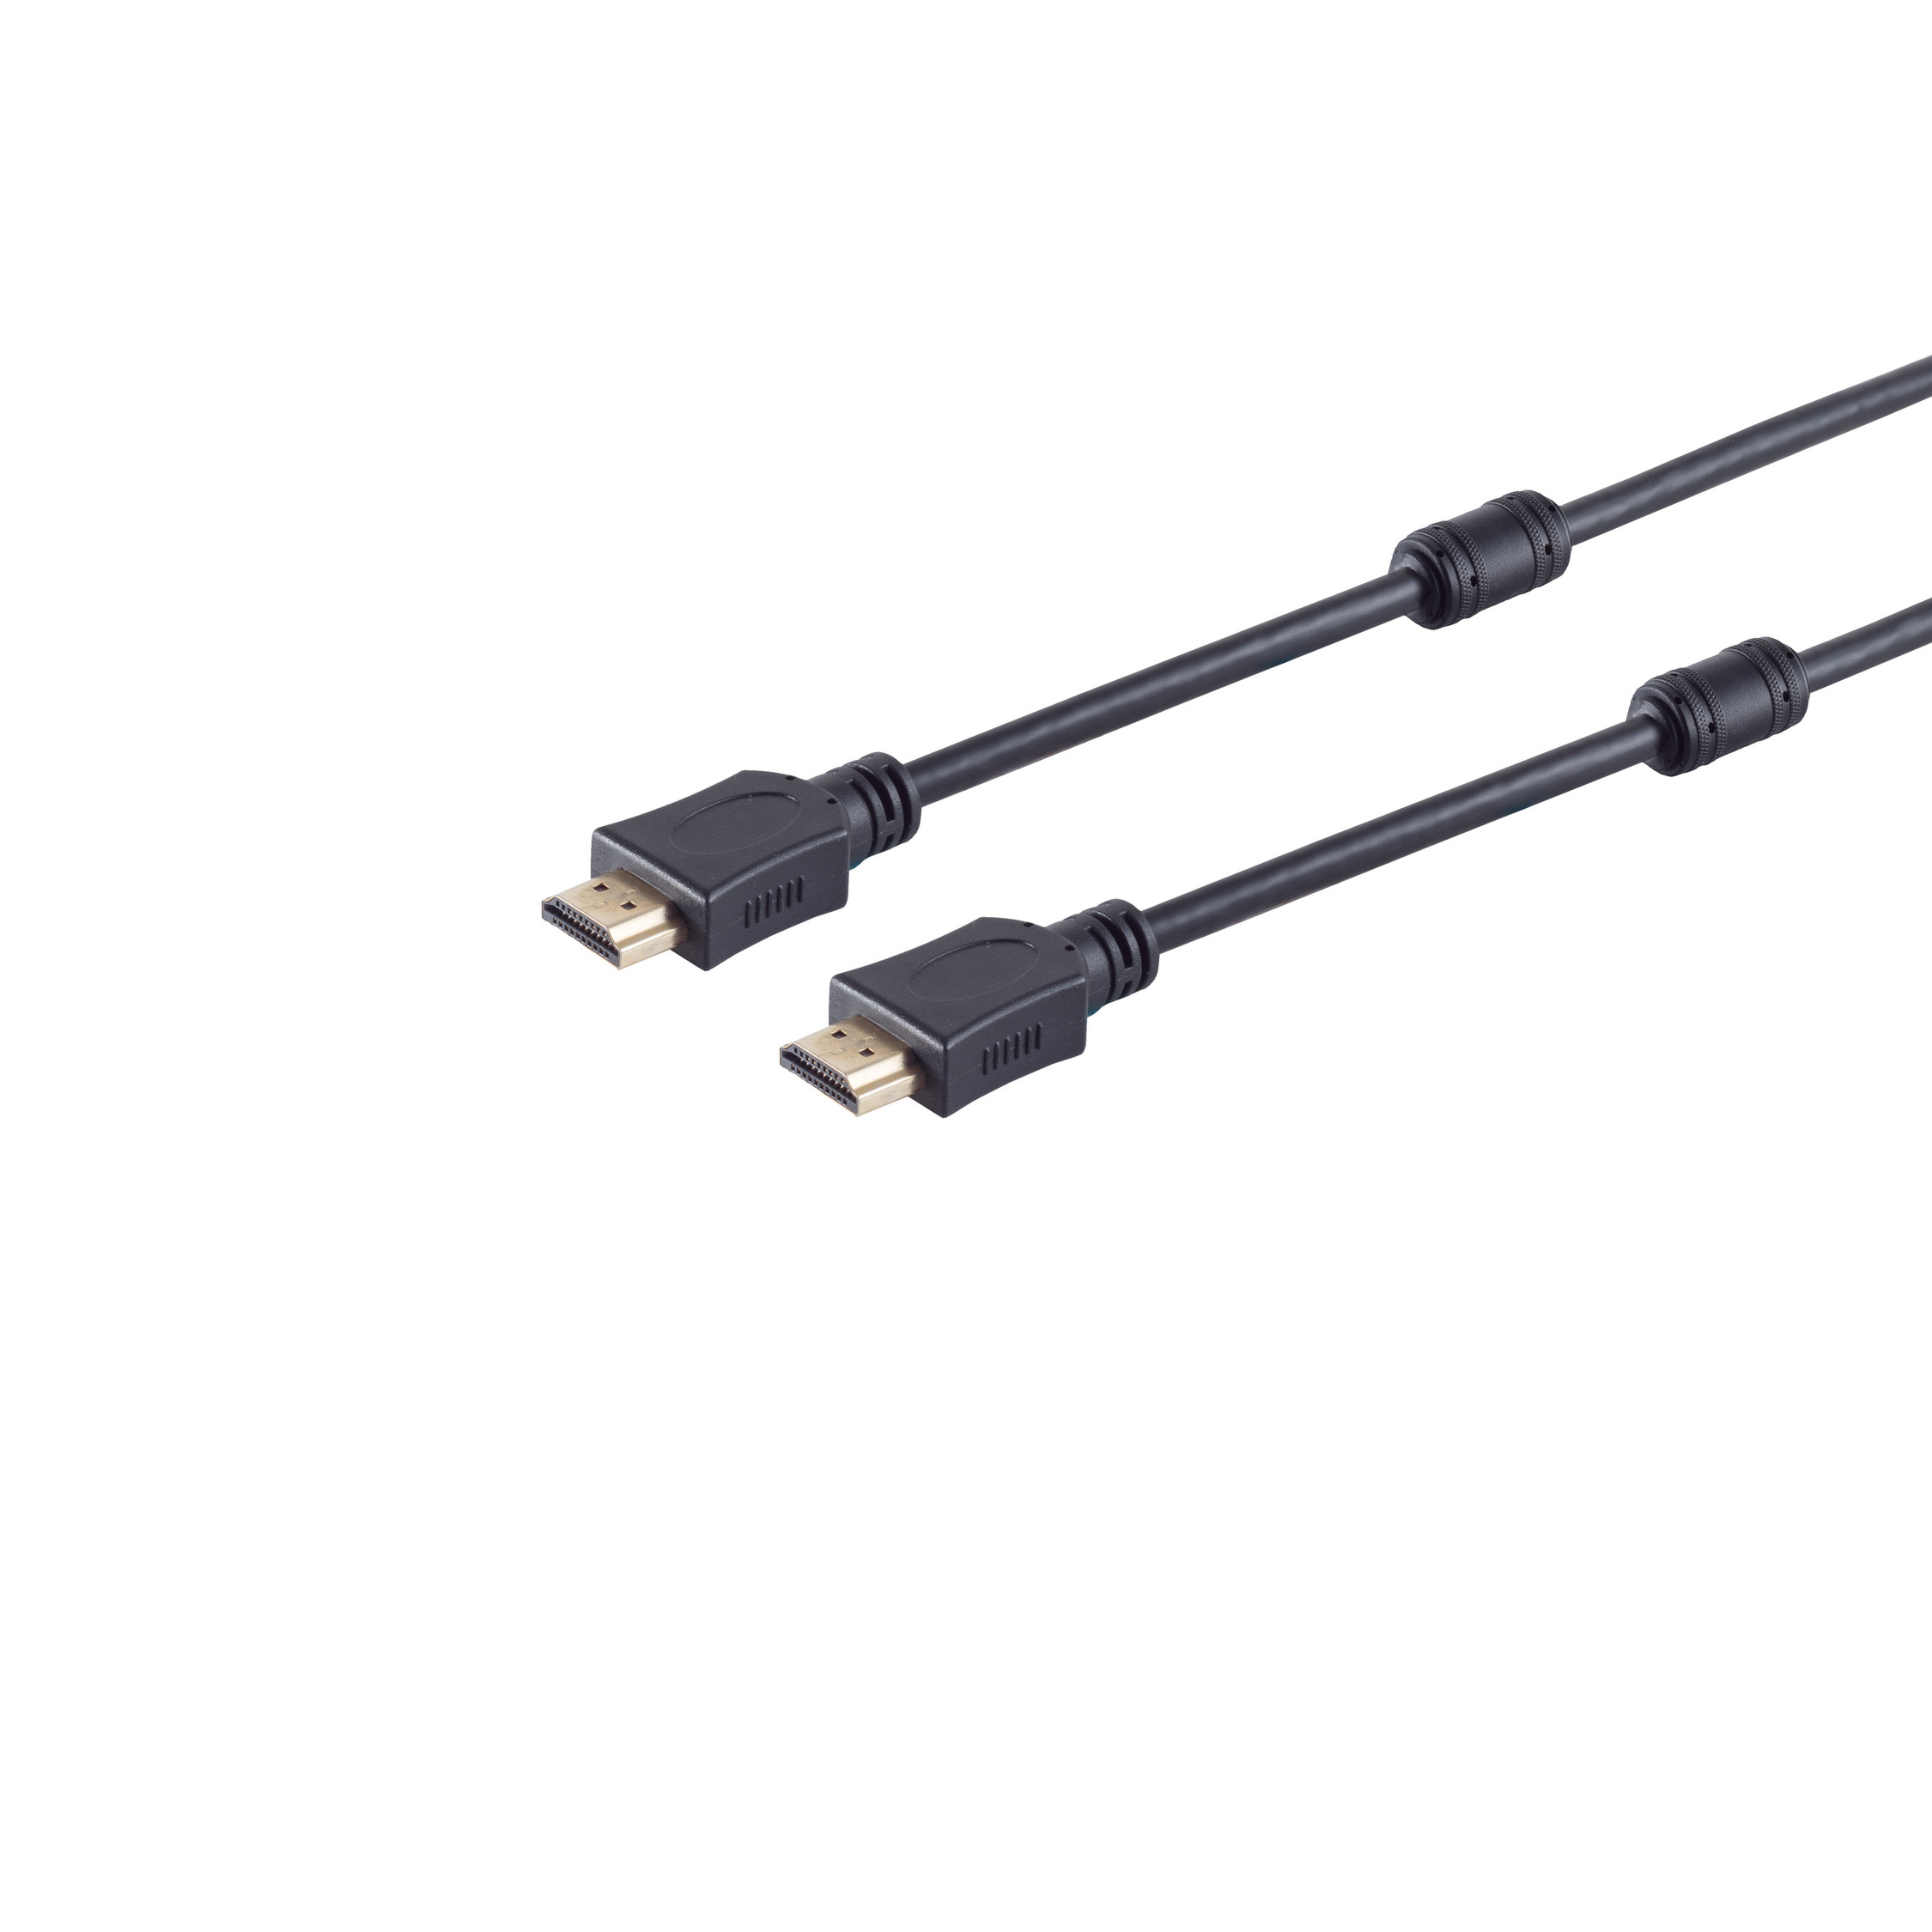 MAXIMUM HEAC HDMI S/CONN HDMI A-Stecker Kabel Ferrit CONNECTIVITY verg A-Stecker/HDMI 10m